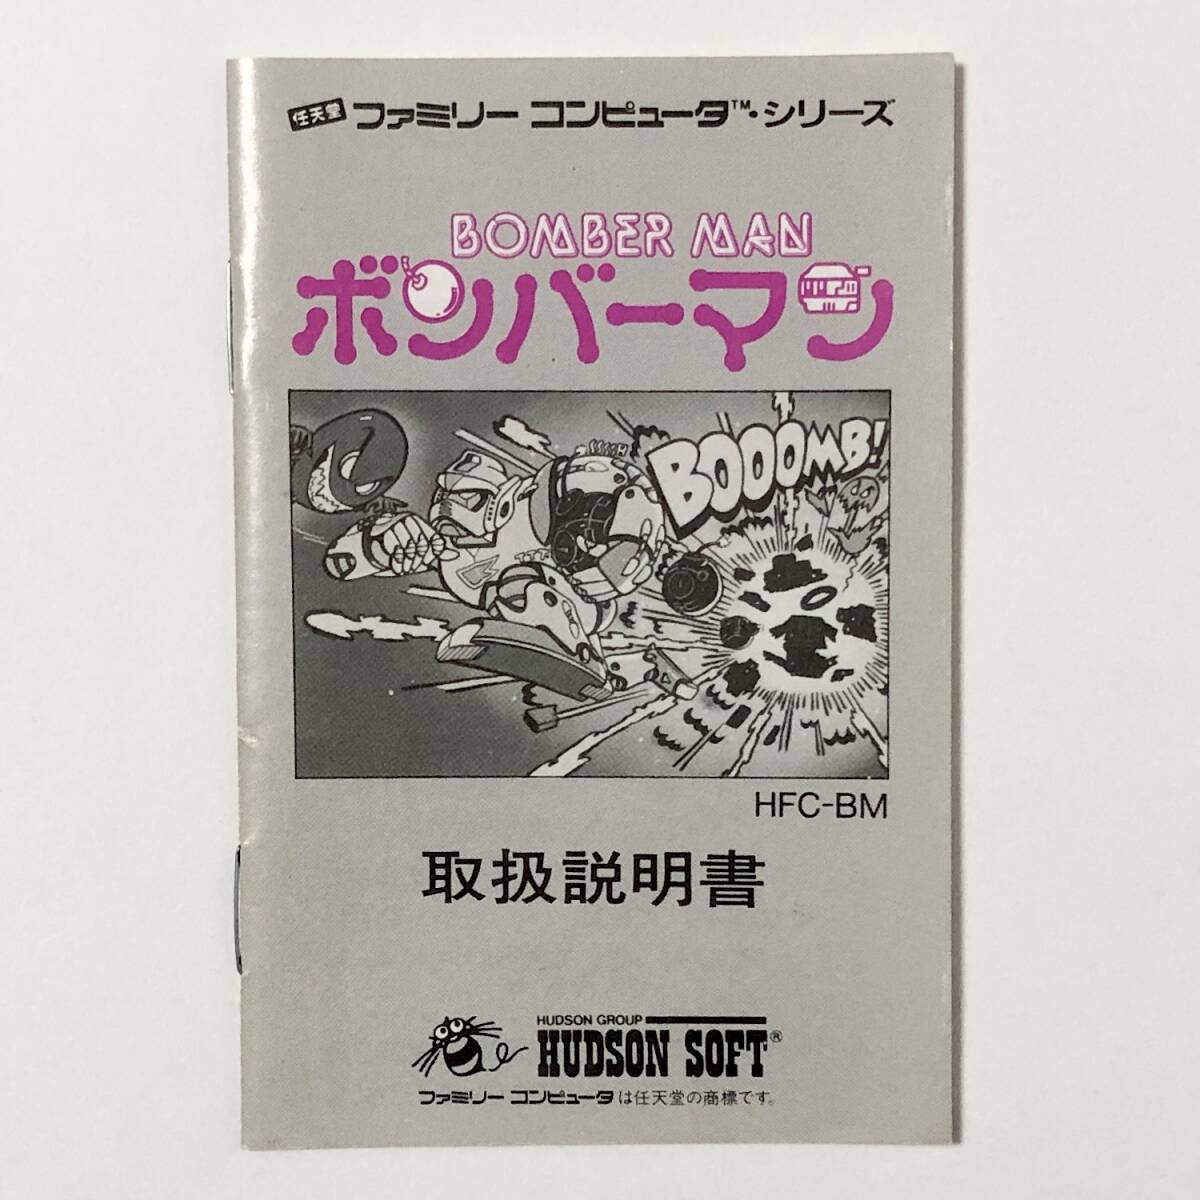 ファミコン ボンバーマン 箱説付き 痛みあり ハドソン レトロゲーム Nintendo Famicom Bomber Man CIB Tested Hudson Soft_画像9